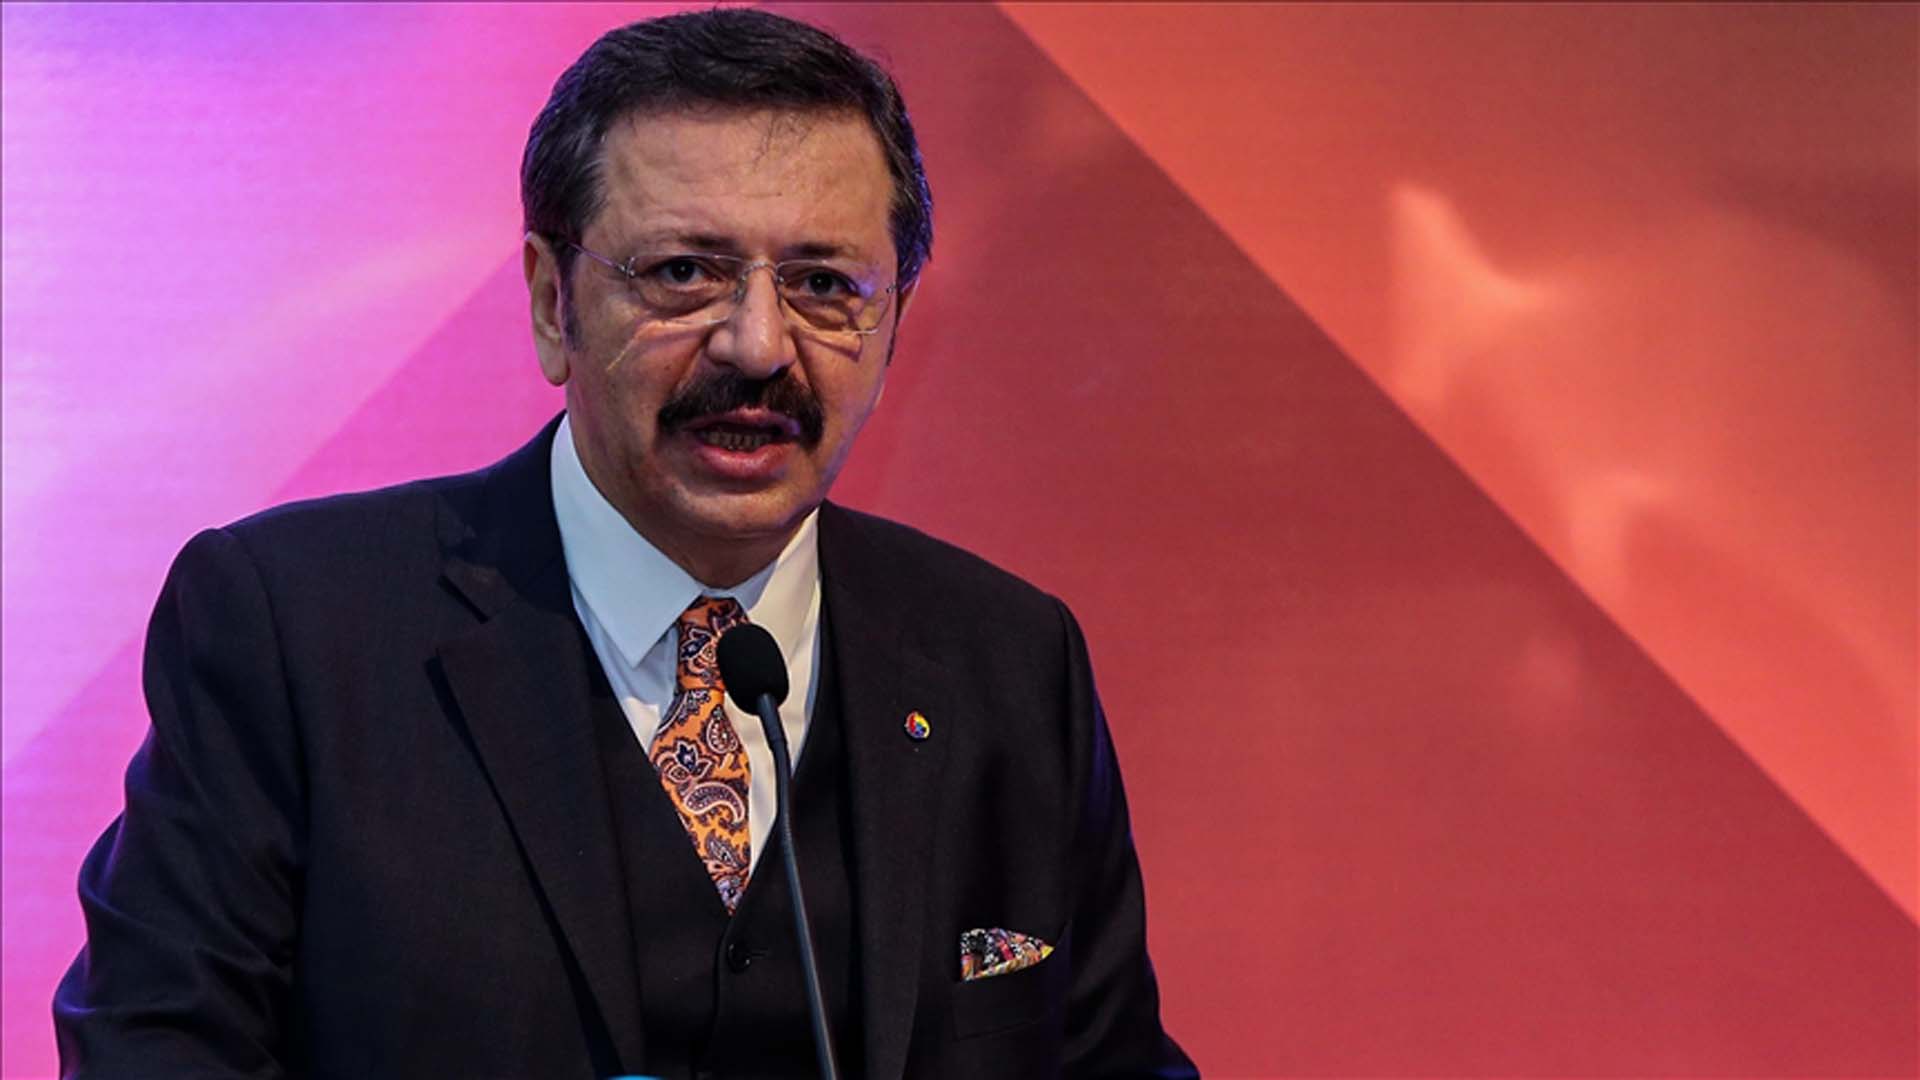 TOBB Başkanı Rifat Hisarcıklıoğlu'ndan asgari ücret çıkışı: Enflasyon oranı üzerinde artmalı dedi, üç önerisini sıraladı 